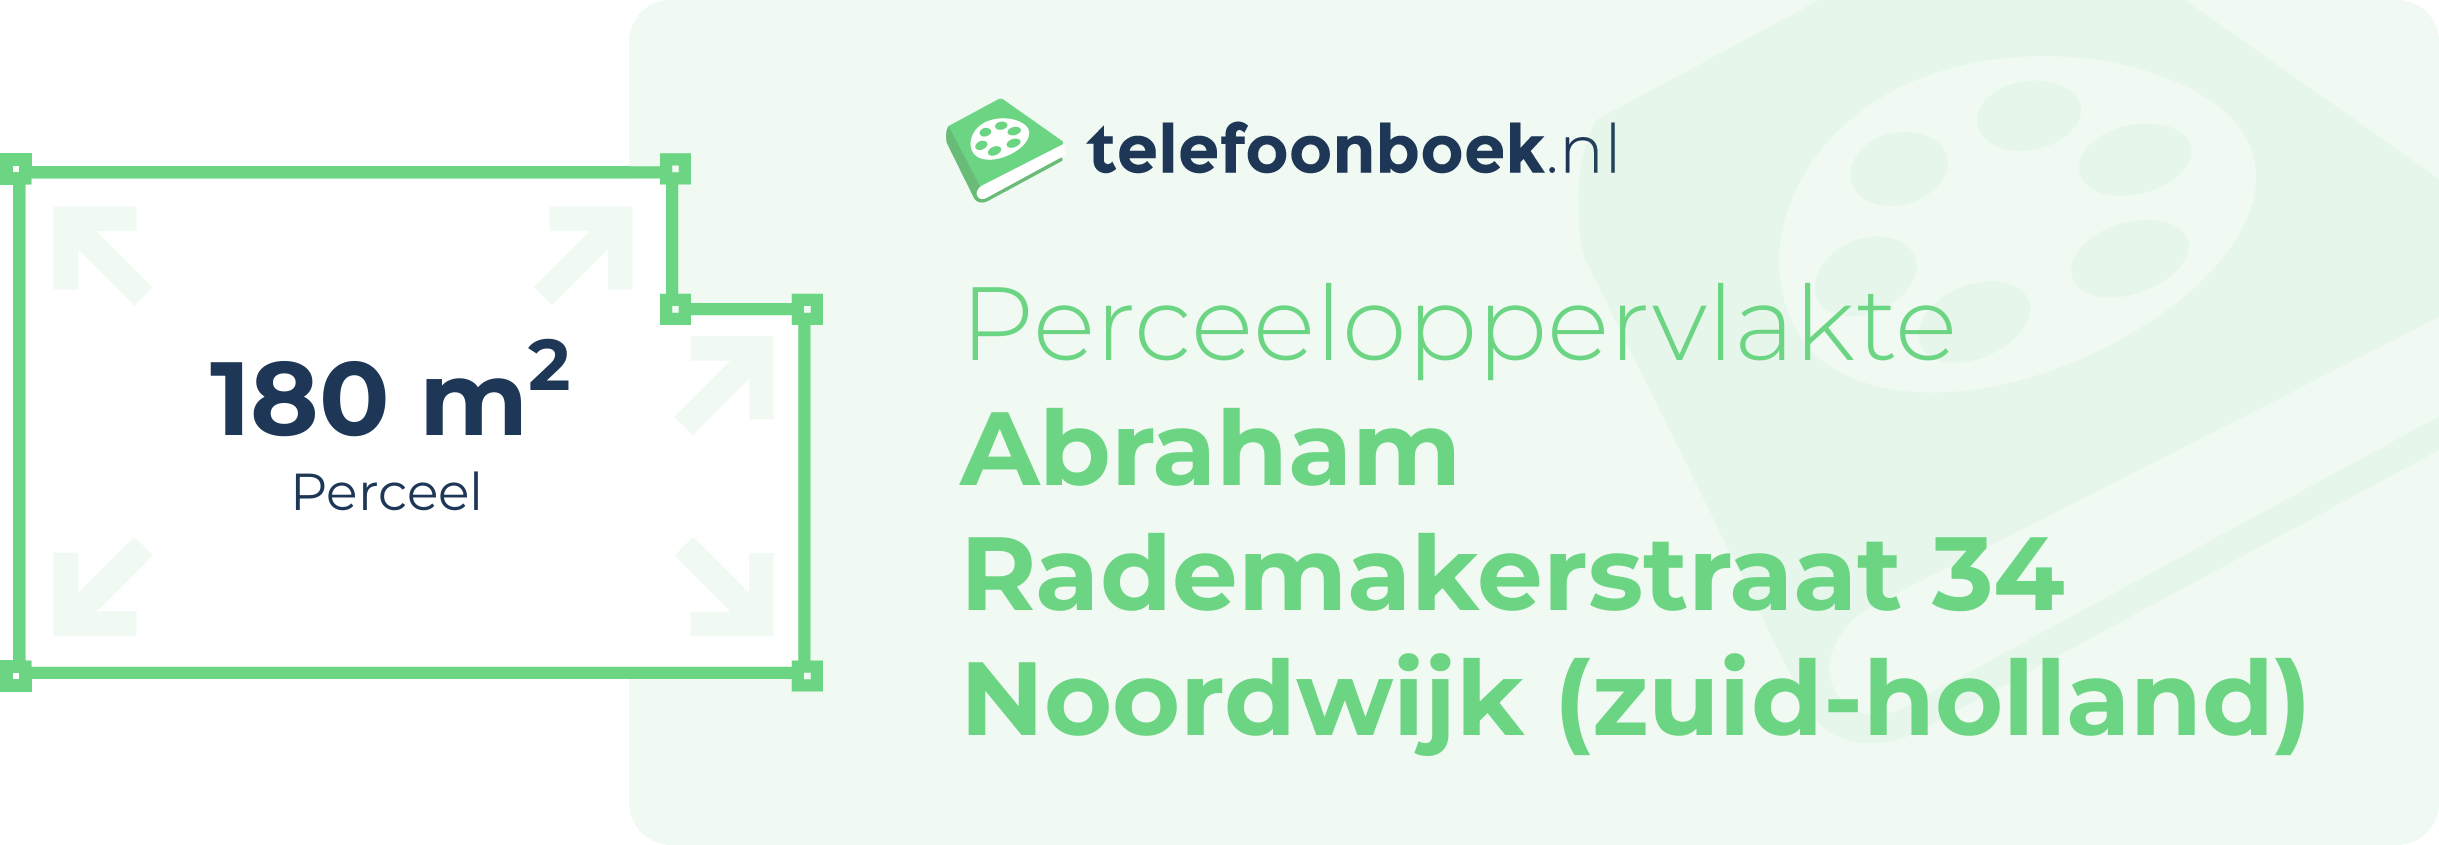 Perceeloppervlakte Abraham Rademakerstraat 34 Noordwijk (Zuid-Holland)